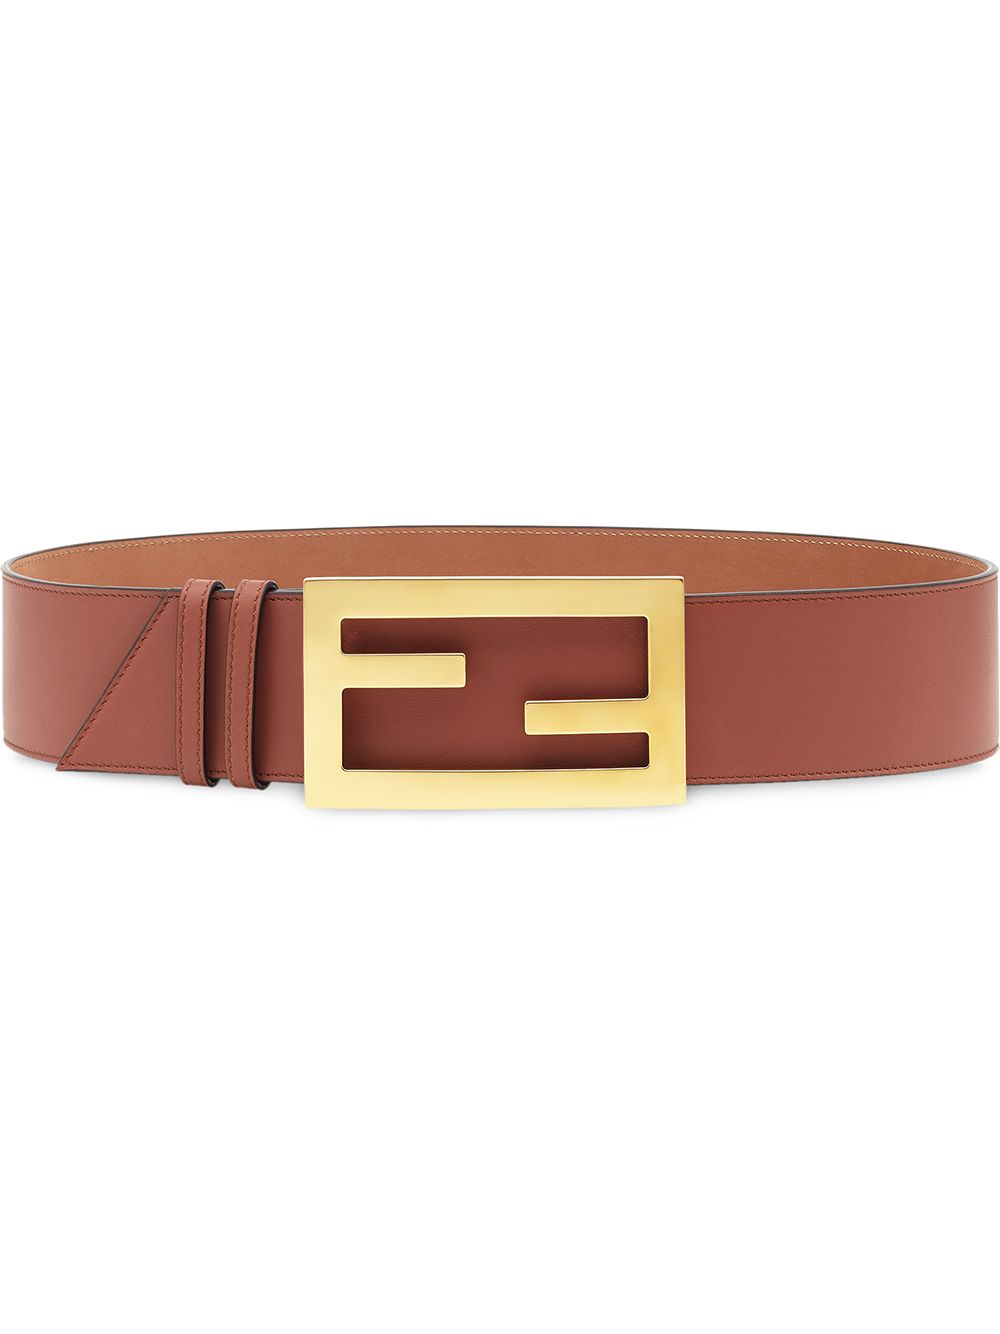 Image 1 of FENDI Baguette belt